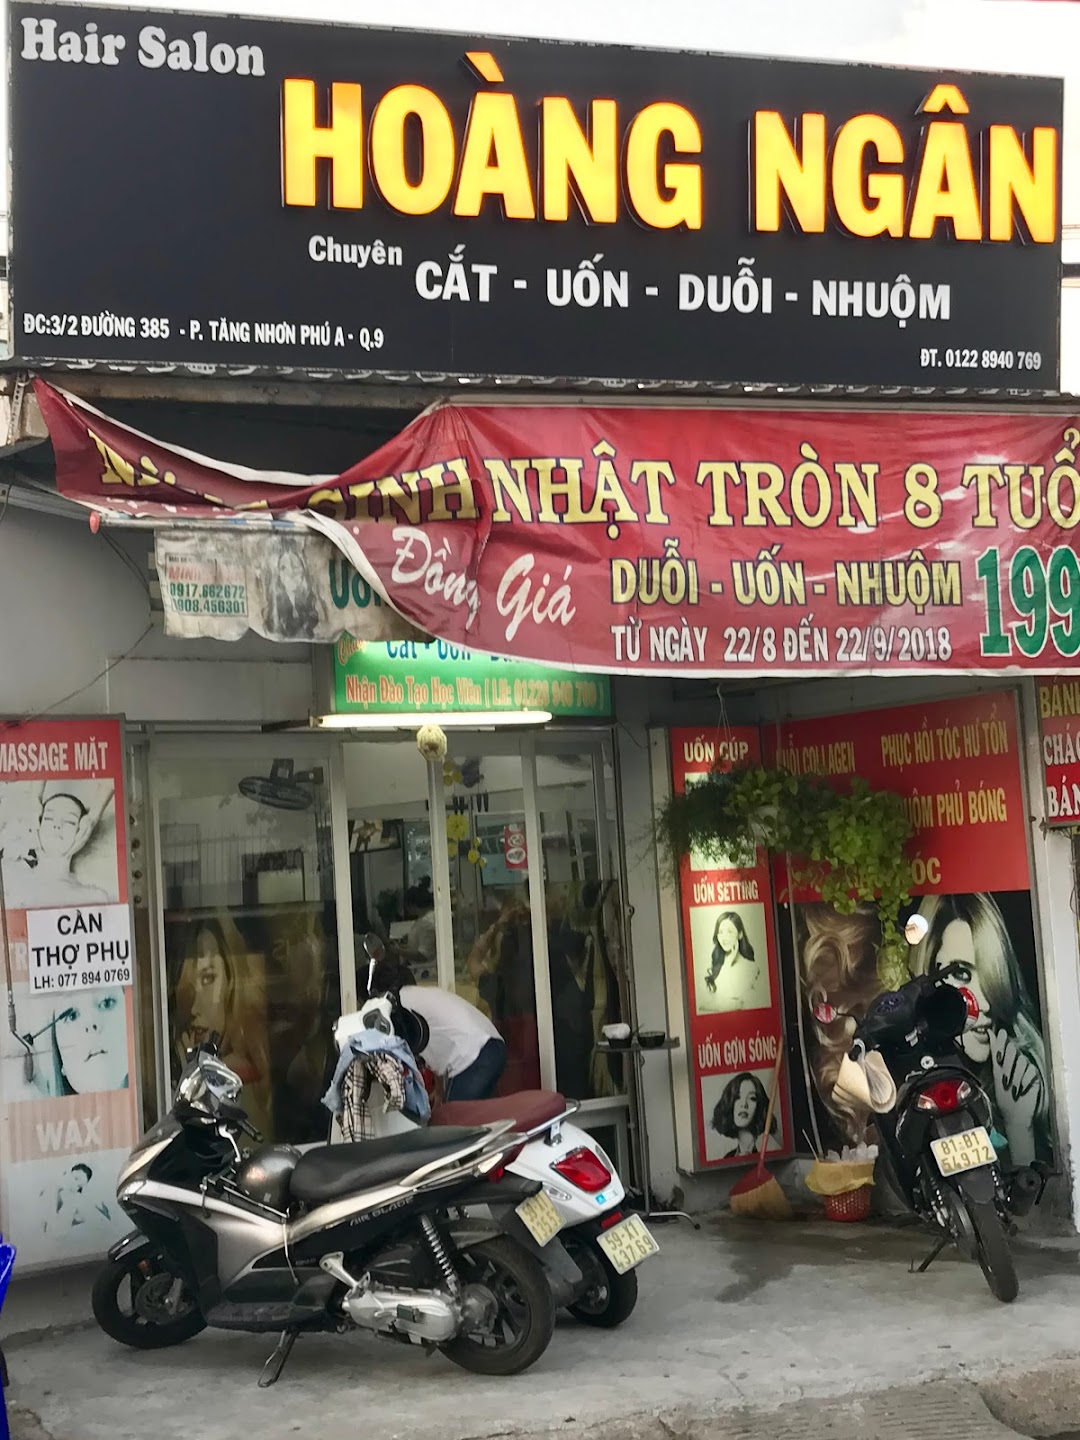 Hair Salon HOÀNG NGÂN